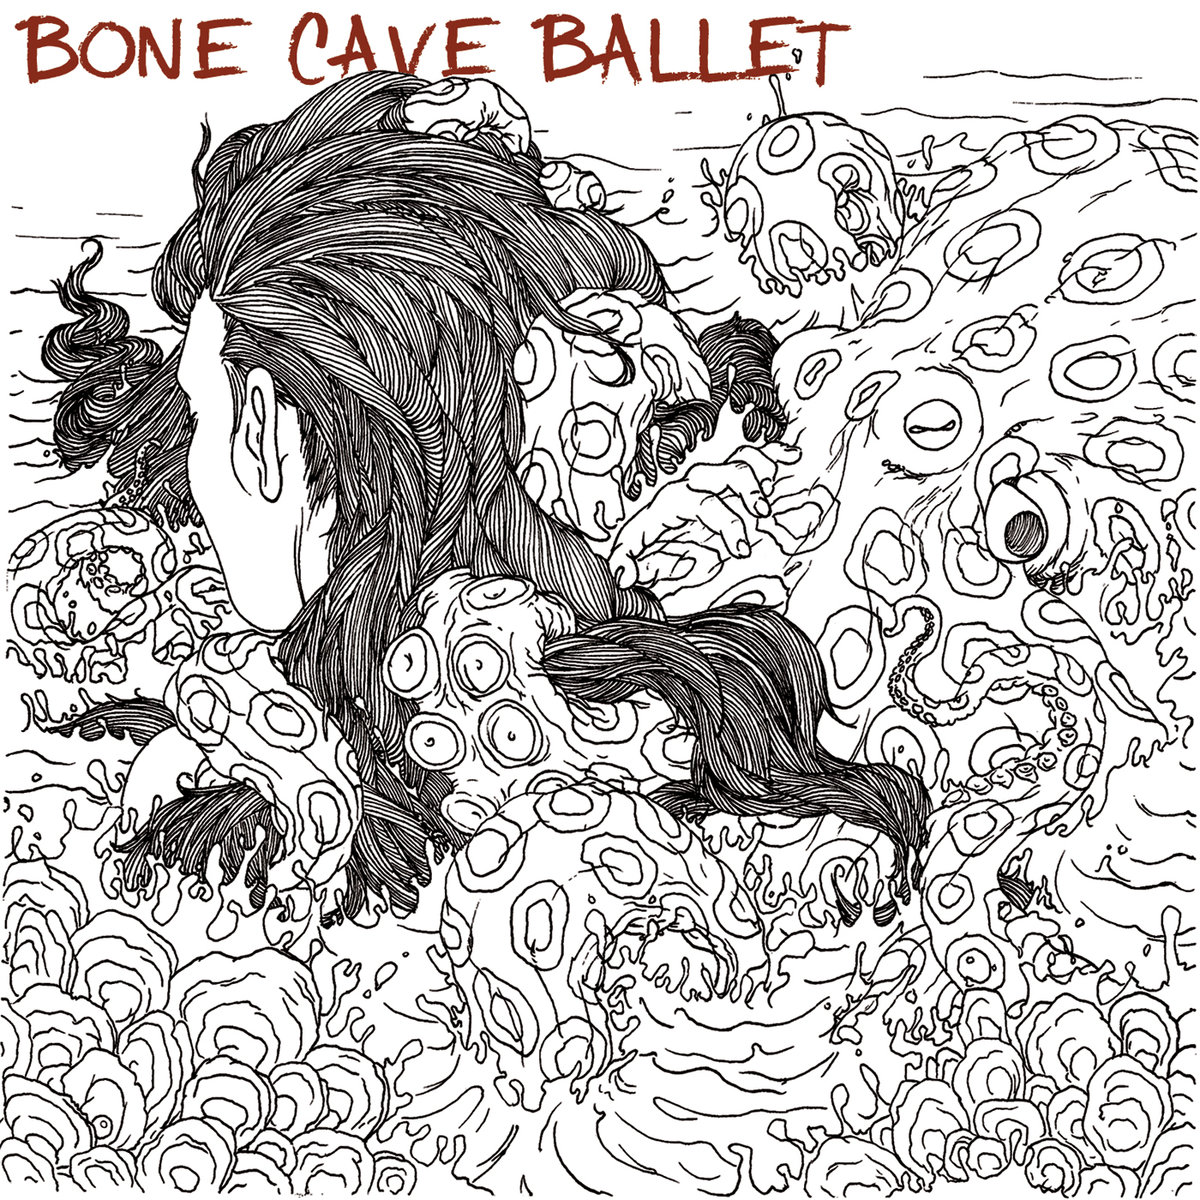 Bone Cave Ballet (e/m)